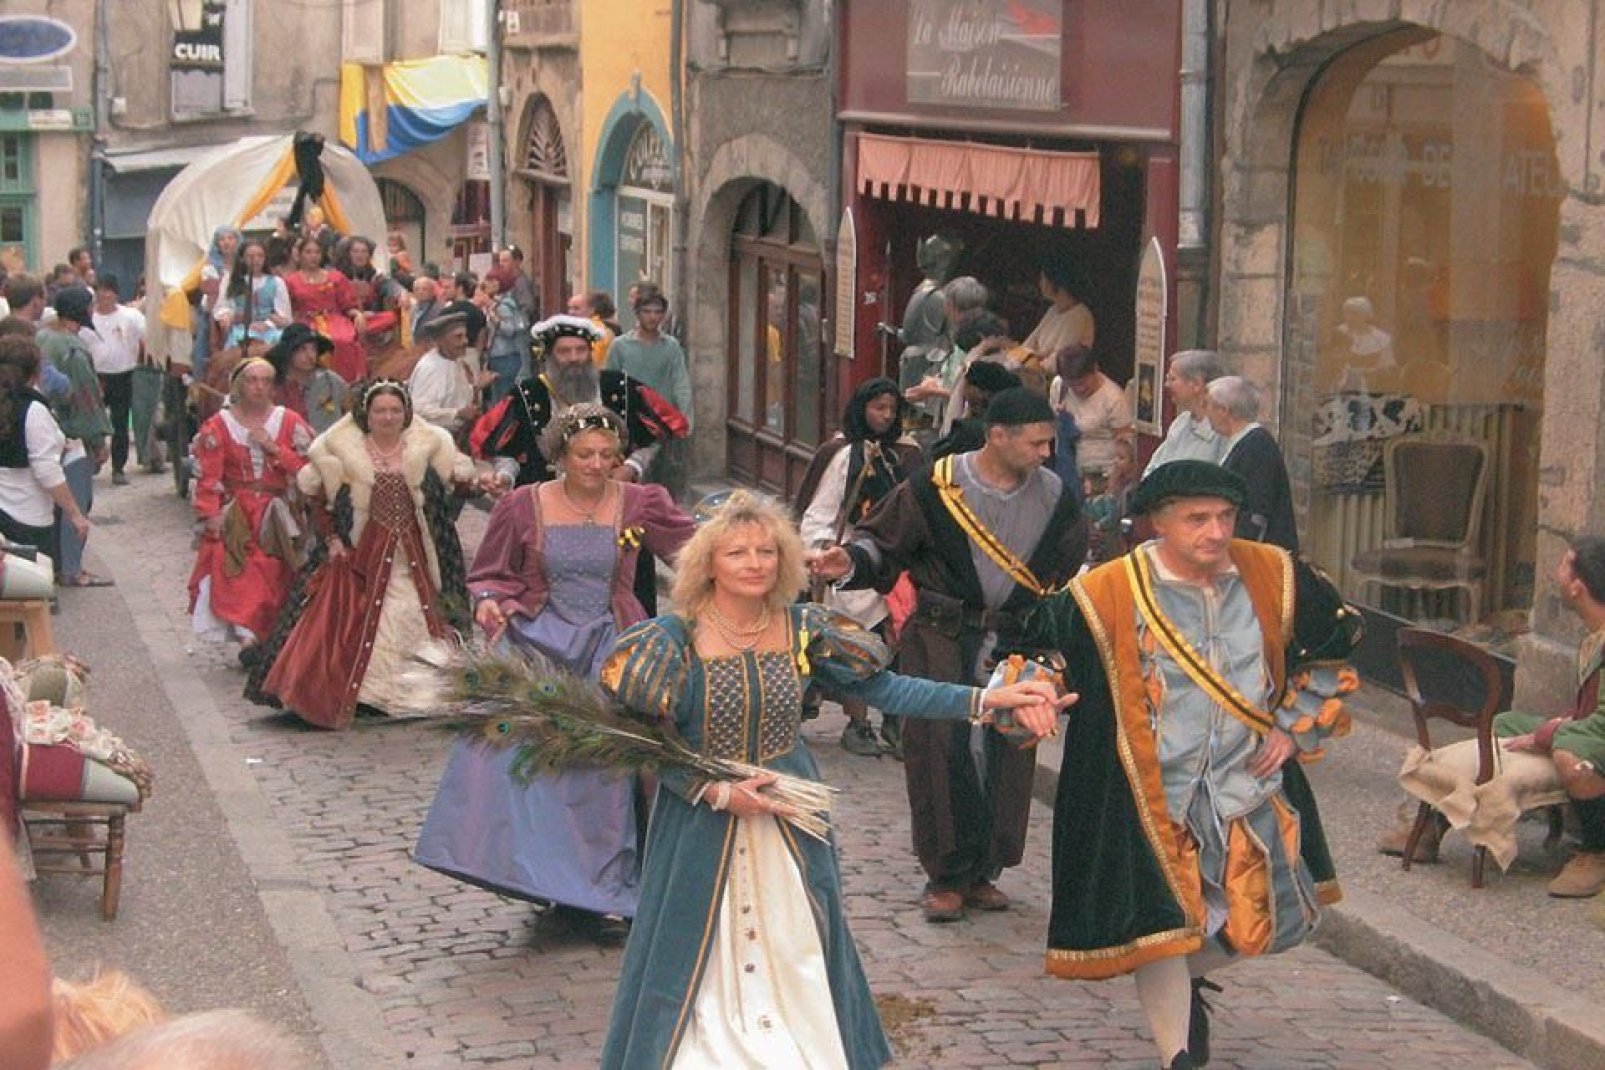 En septiembre, la ciudad organiza una gran fiesta del Renacimiento. Es la ocasión perfecta para descubrir los trajes de época y asistir a las reconstrucciones históricas.